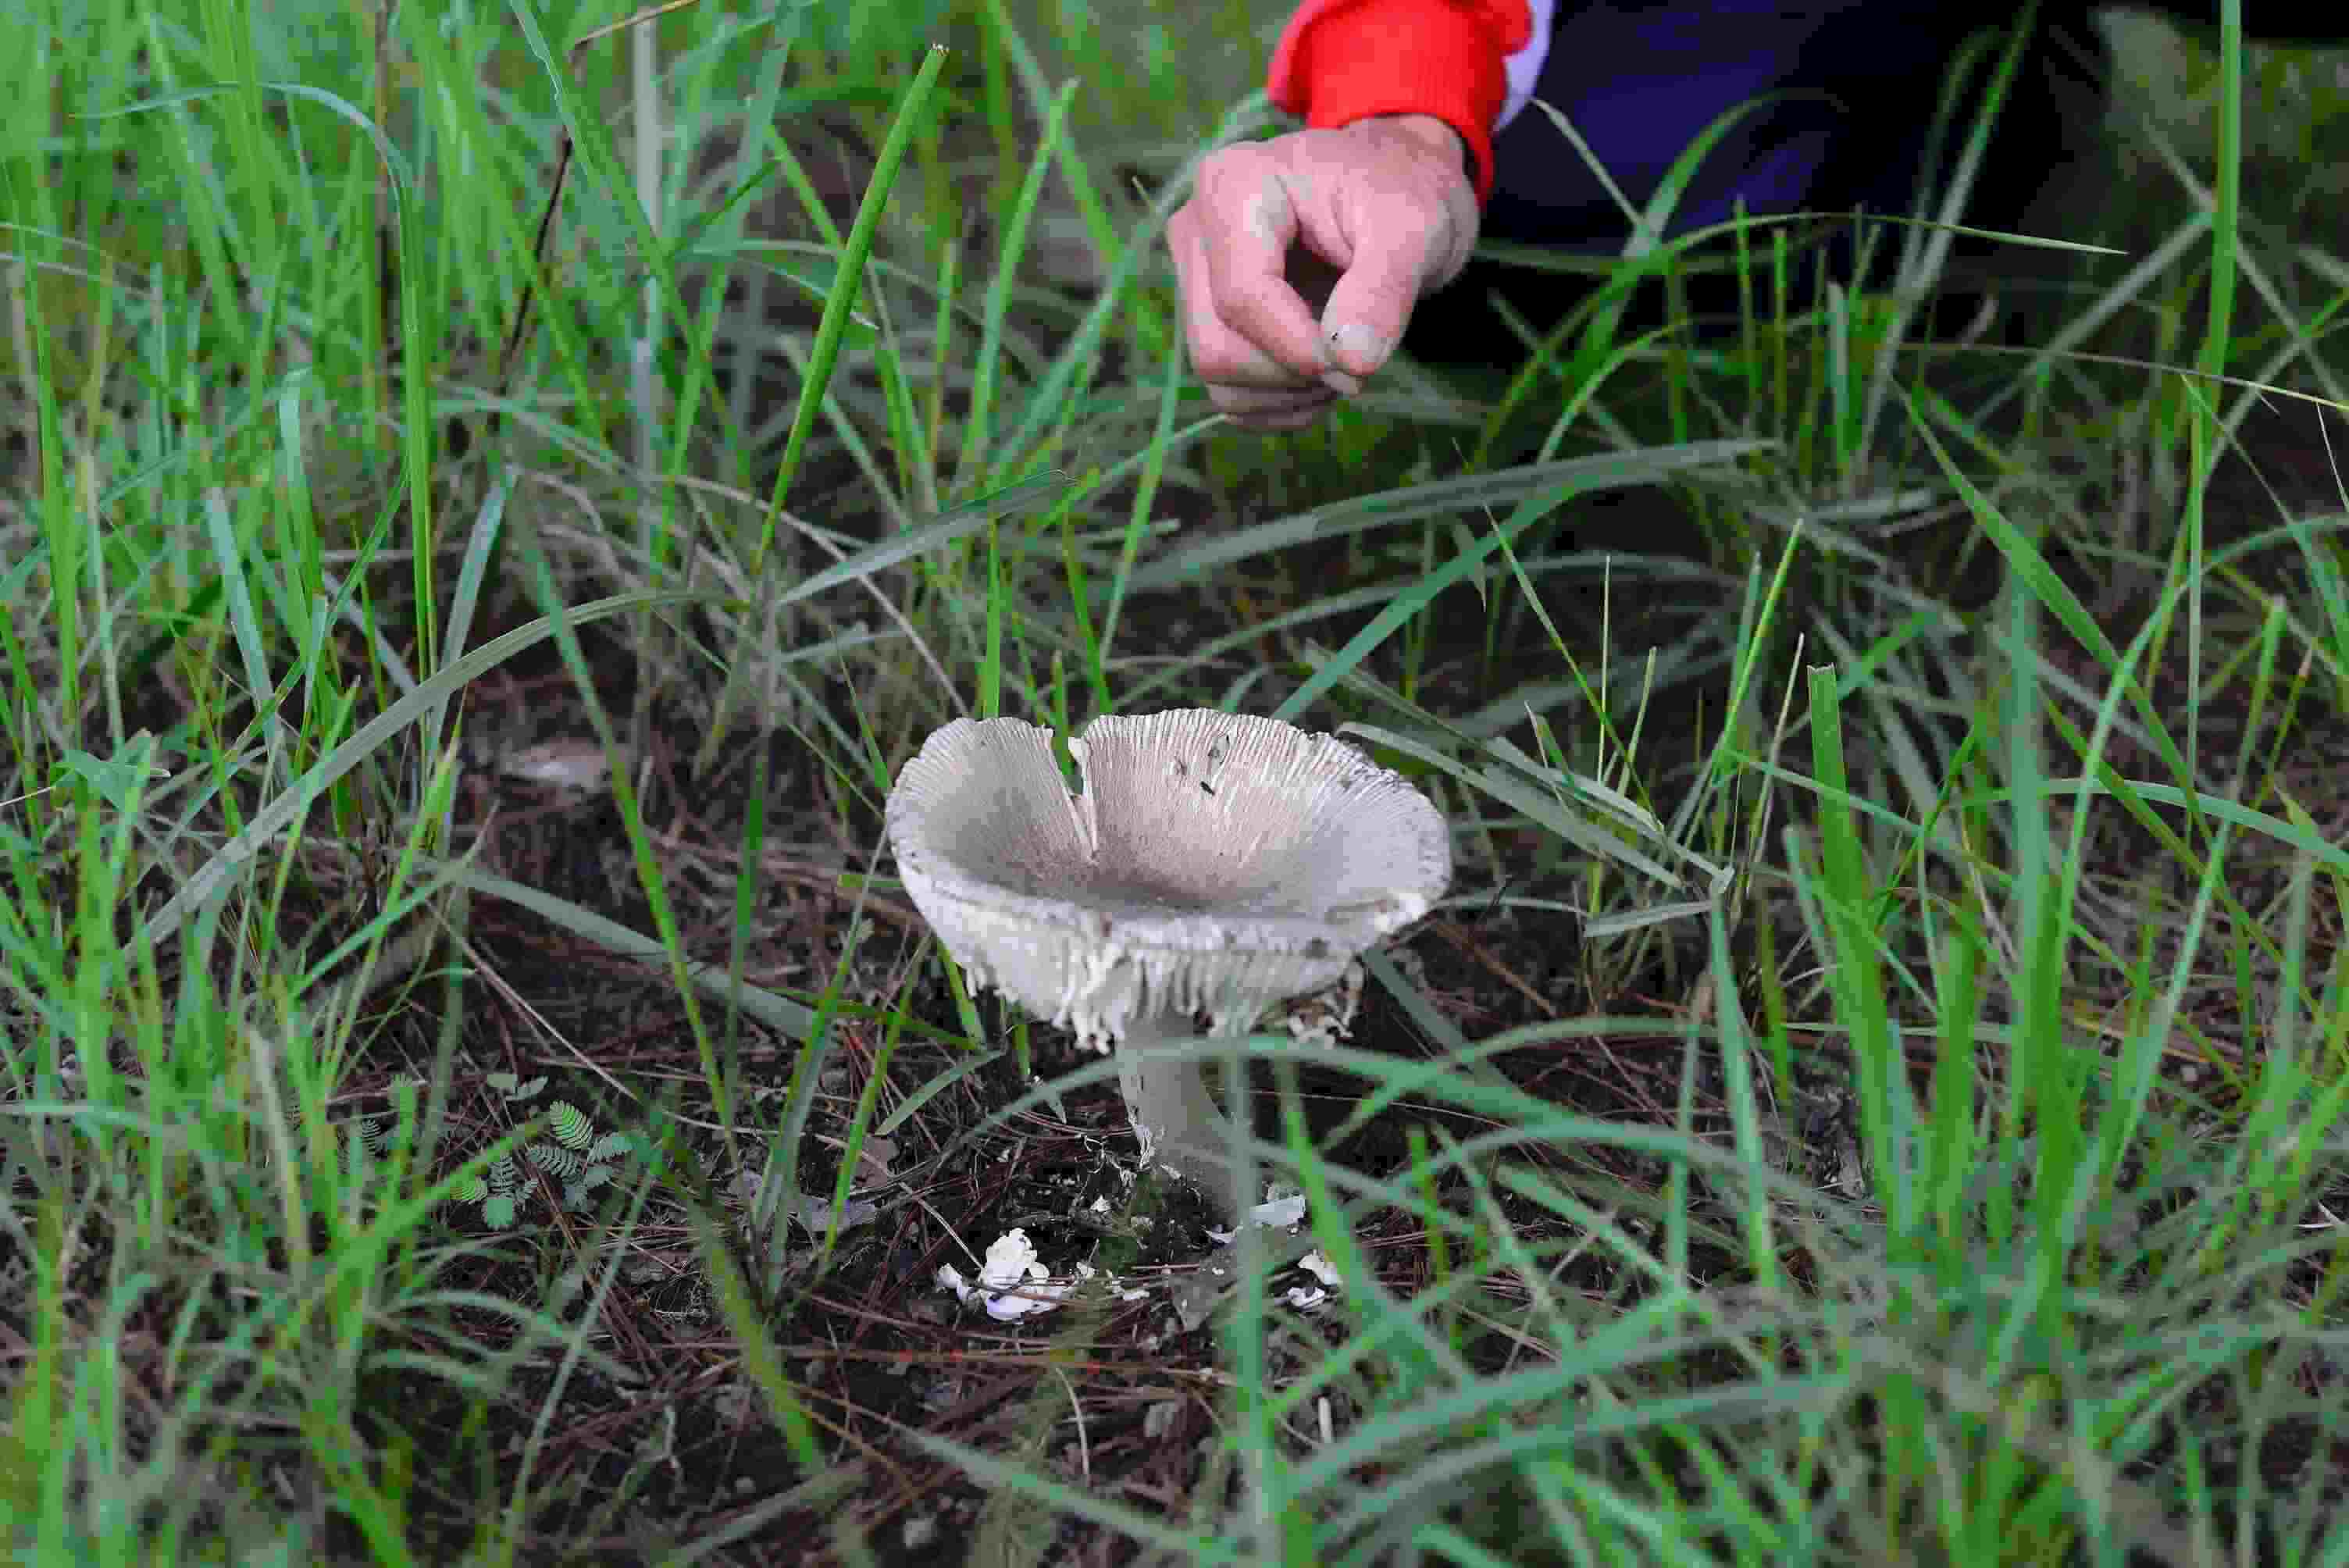 Nếu không thực sự am hiểu về nấm, không thường xuyên đi rừng thì cần có một người địa phương có kinh nghiệm lâu năm về nấm đi cùng.